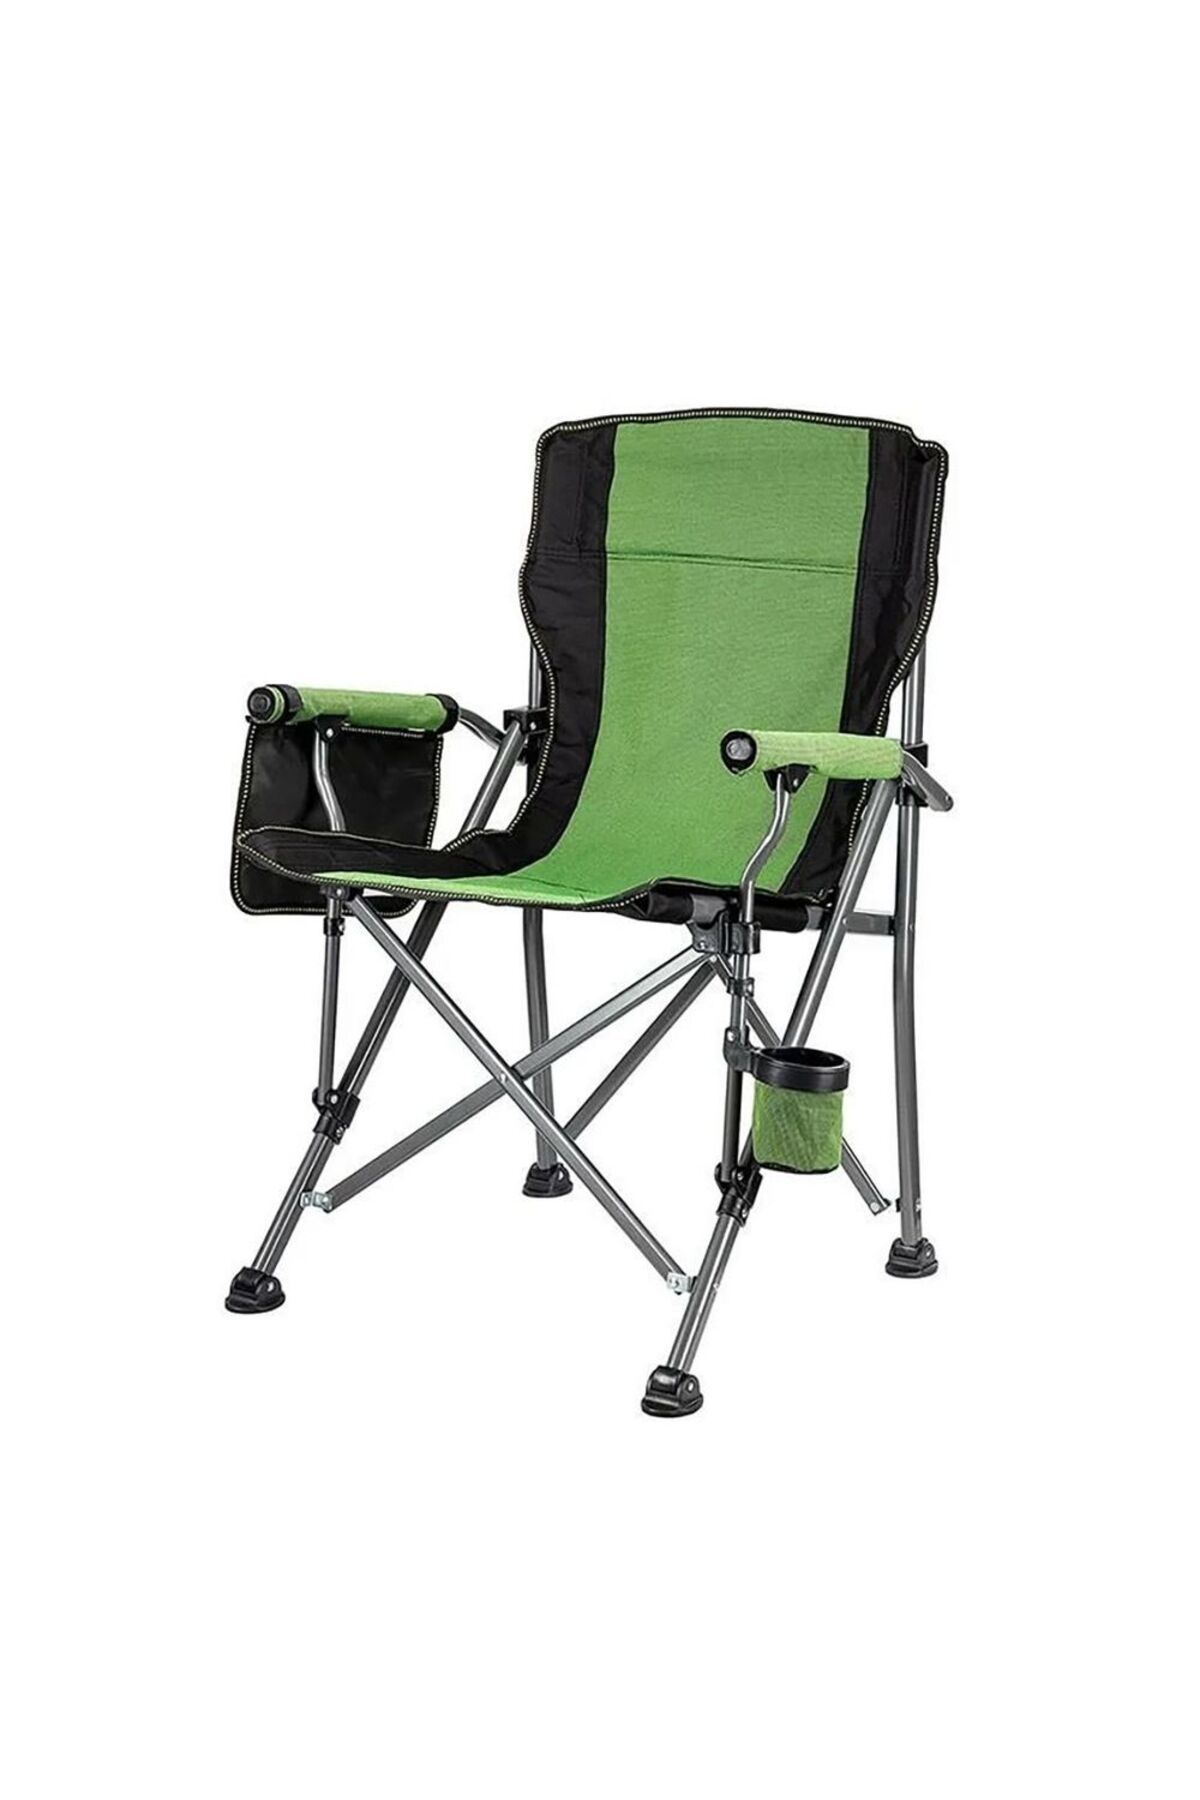 MADFOX Roxy Katlanır Kamp Sandalyesi Yeşil-siyah